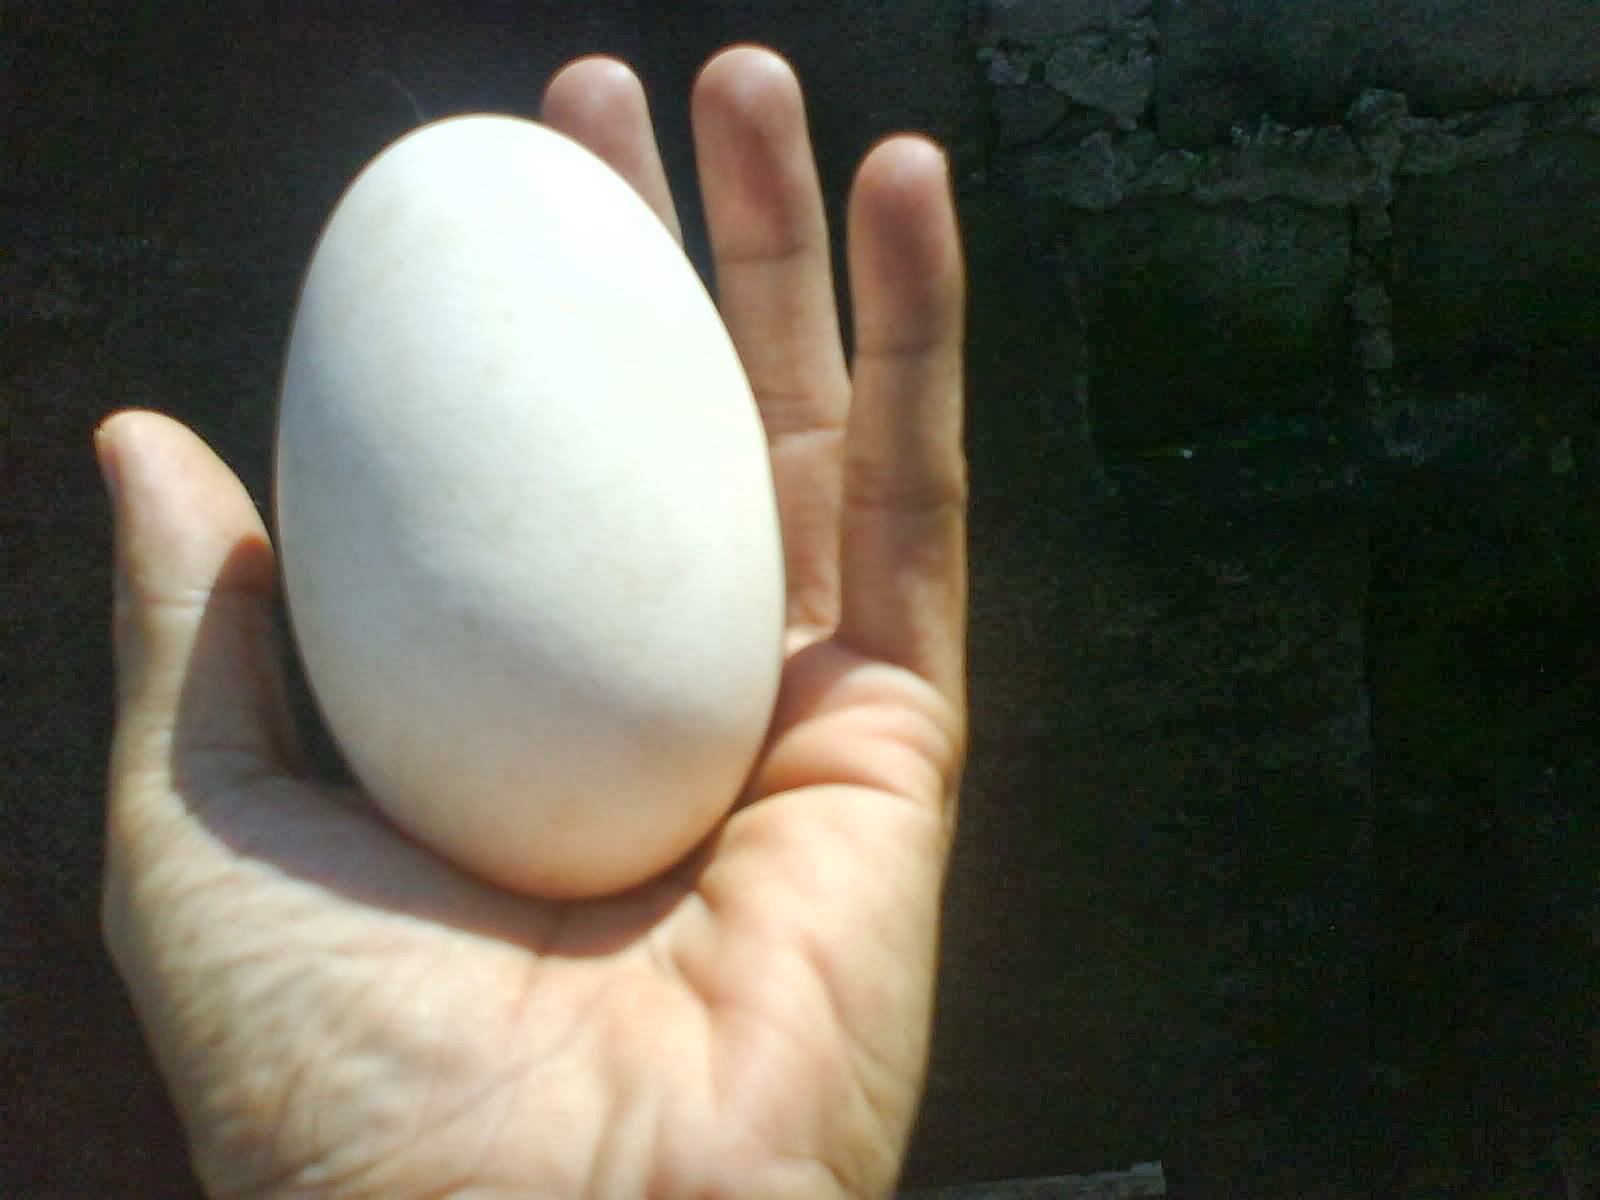 Inilah! Telur Termahal di Indonesia, seharga 25ribu Rupiah per Butir